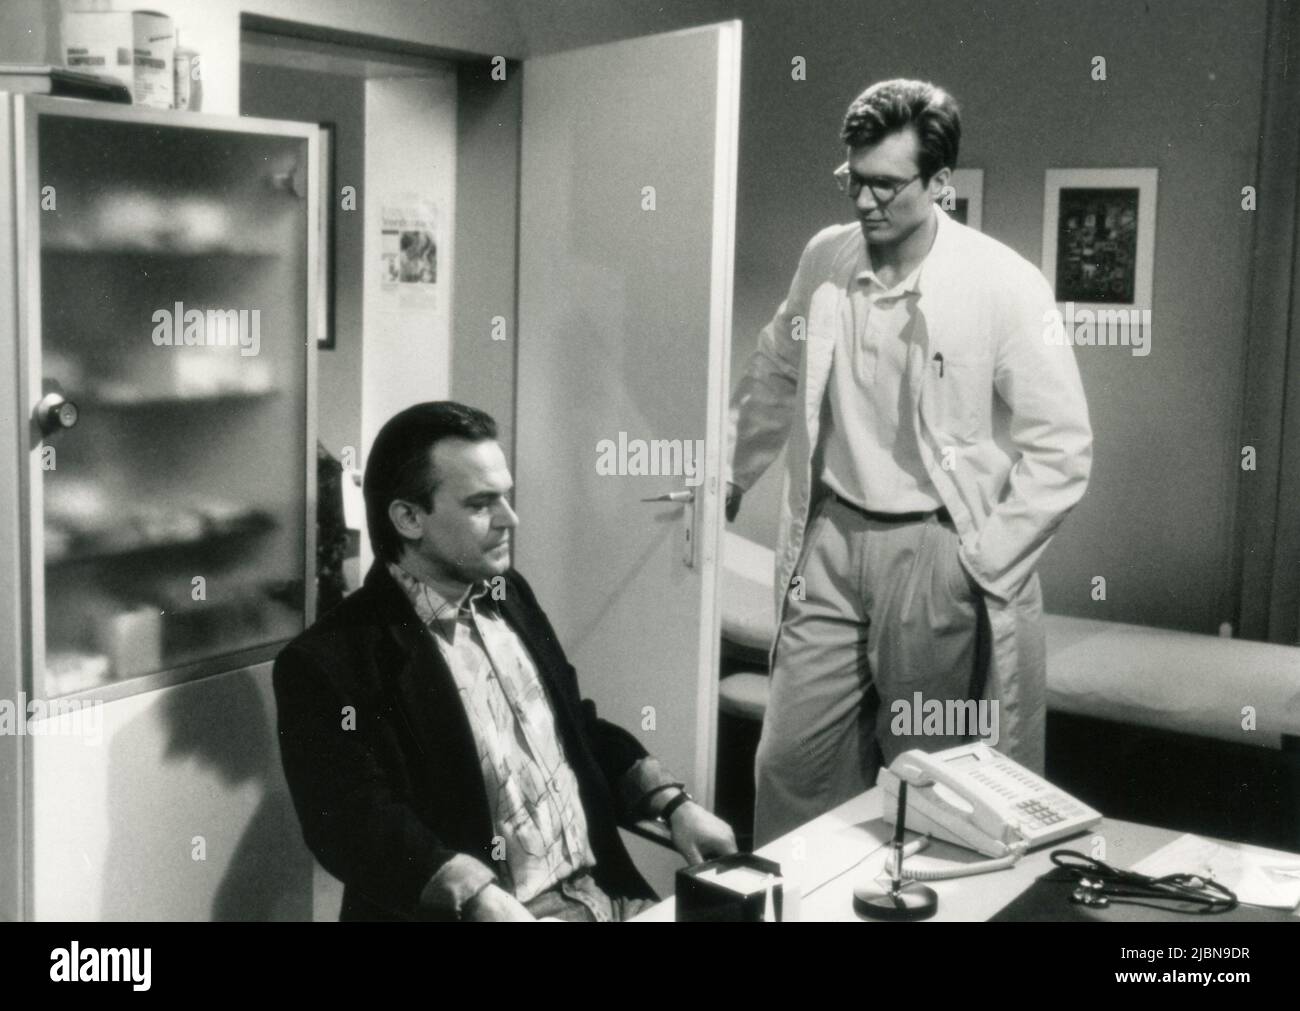 Actors Hans Christiani and Johannes Baasner in the German TV Series Gute Zeiten, schlechte Zeiten, Germany 1992 Stock Photo